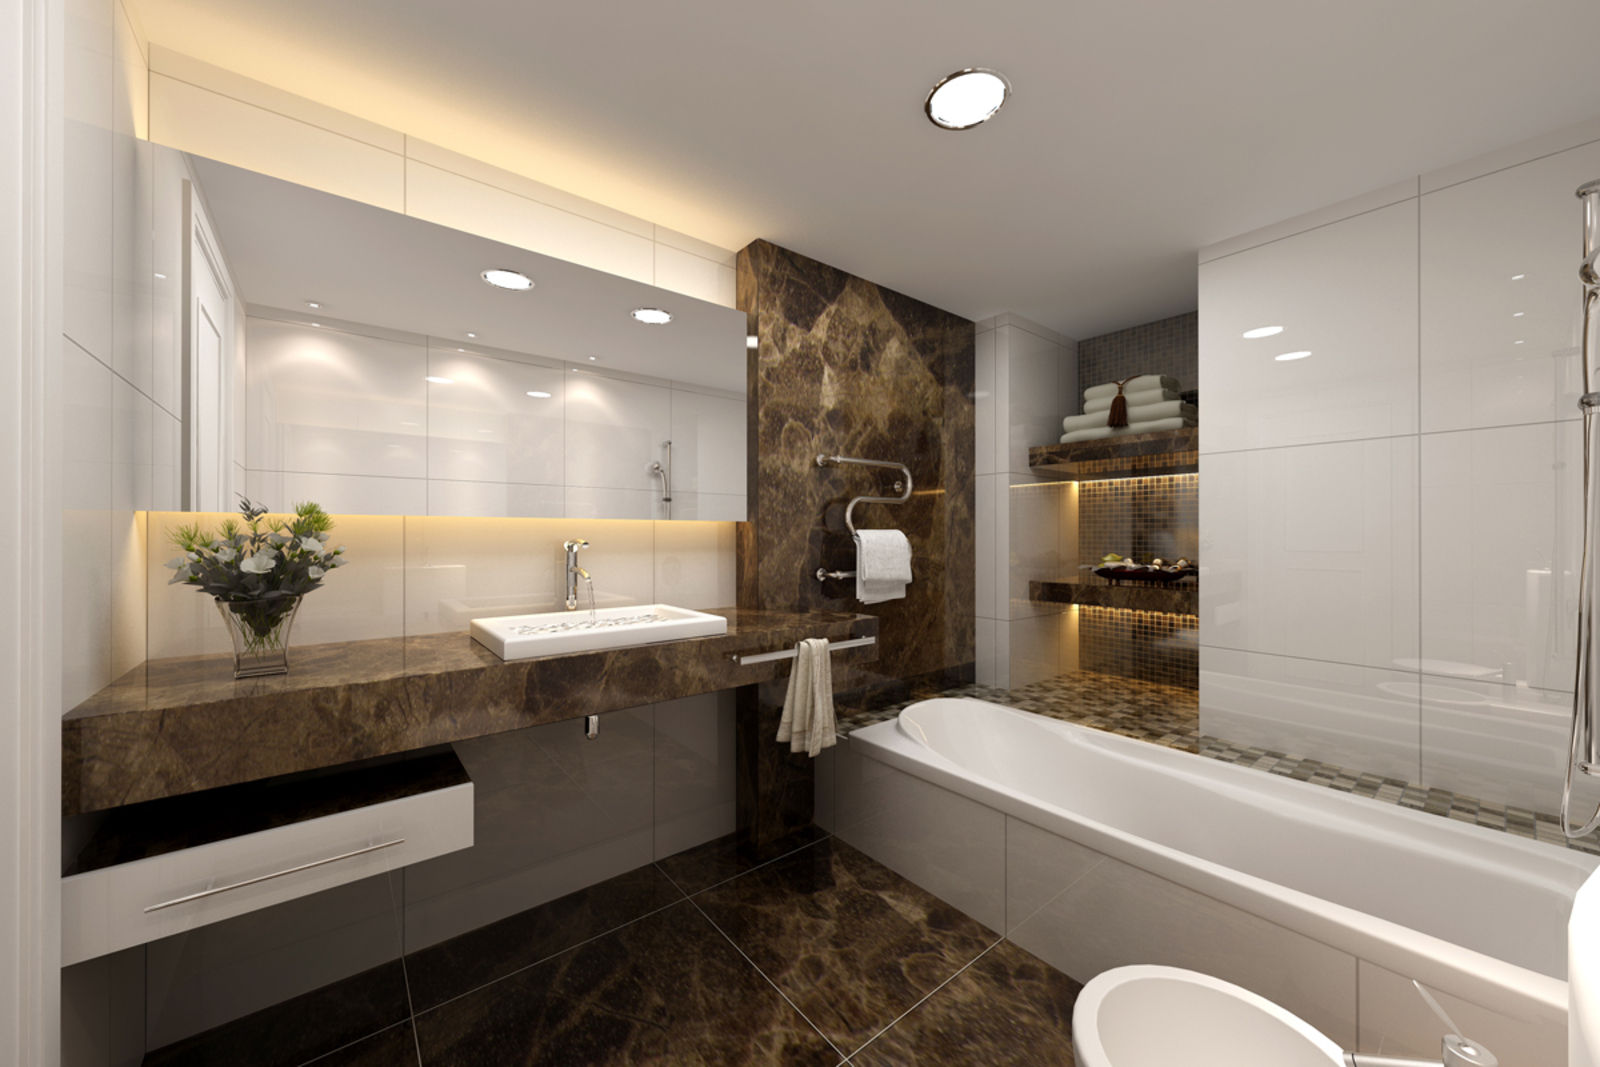 Interior bathroom, Marmi di Carrara Marmi di Carrara Phòng tắm: thiết kế nội thất · bố trí · ảnh Sinks